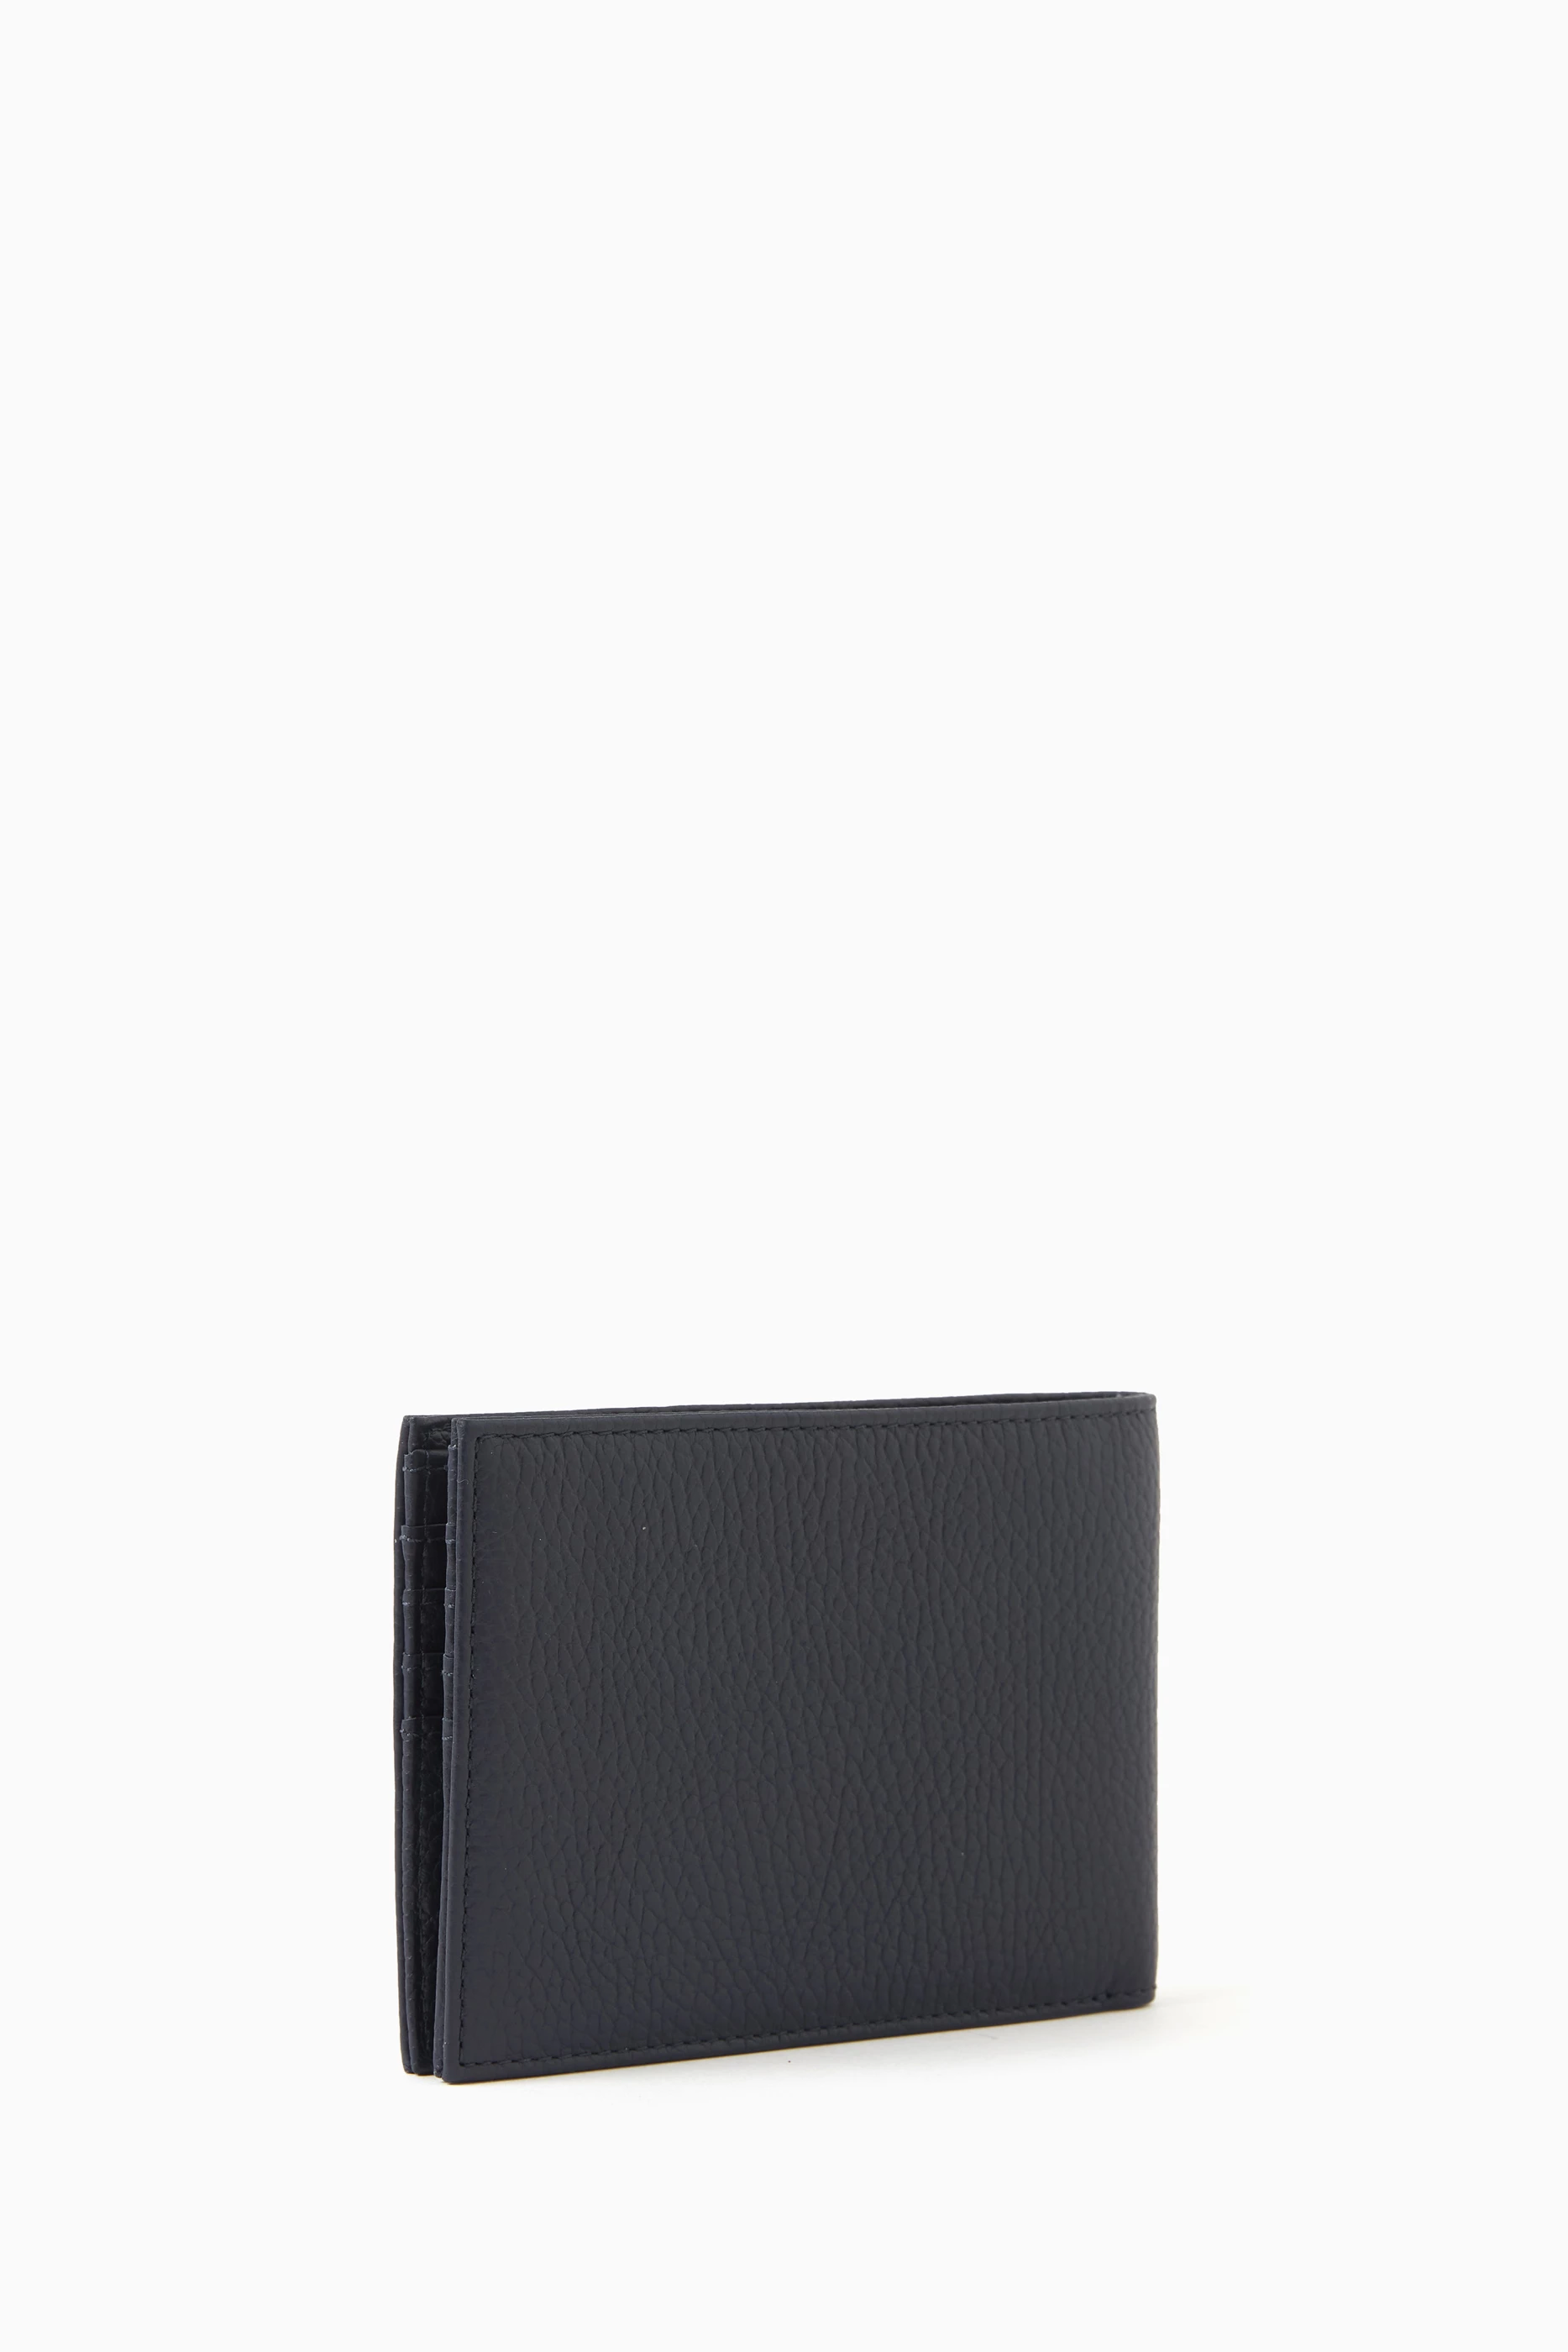 Emporio Armani Men's Tumbled Leather Wallet - White - Wallets